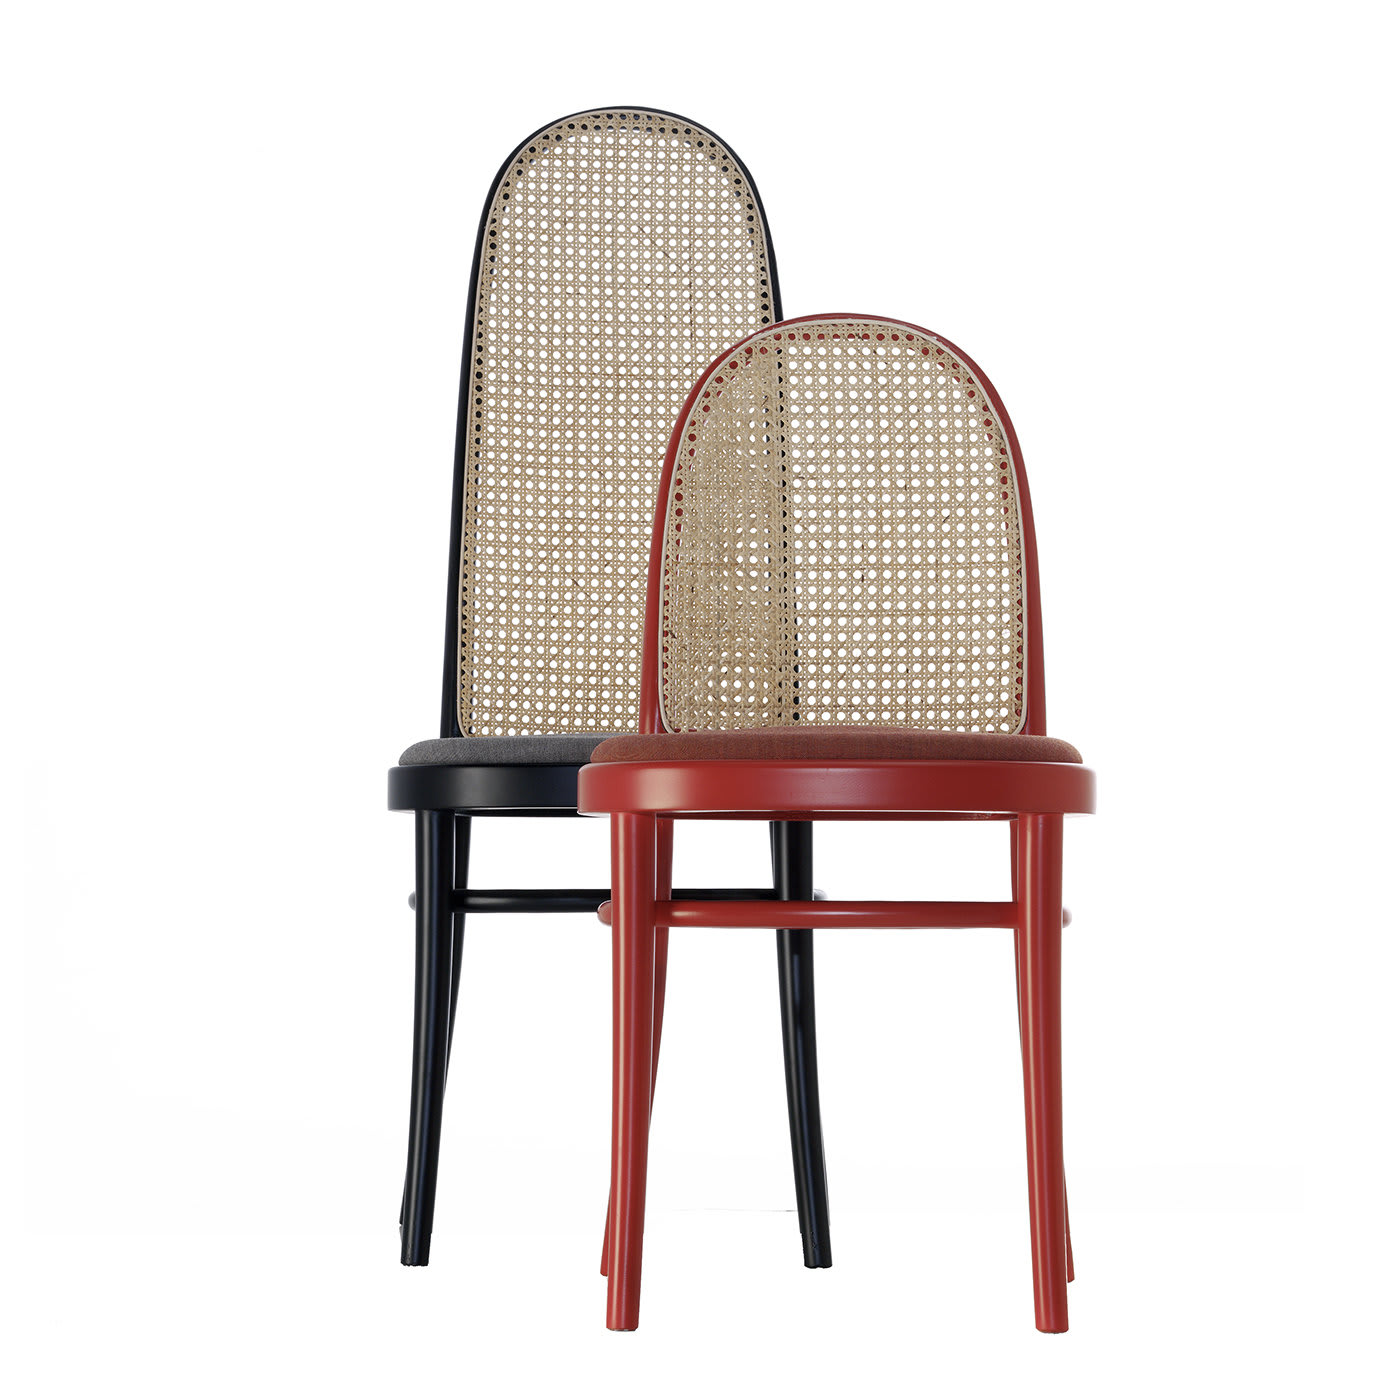 Morris Red Low Chair by GamFratesi - Gebrüder Thonet Vienna GmbH (GTV) – Wiener GTV Design